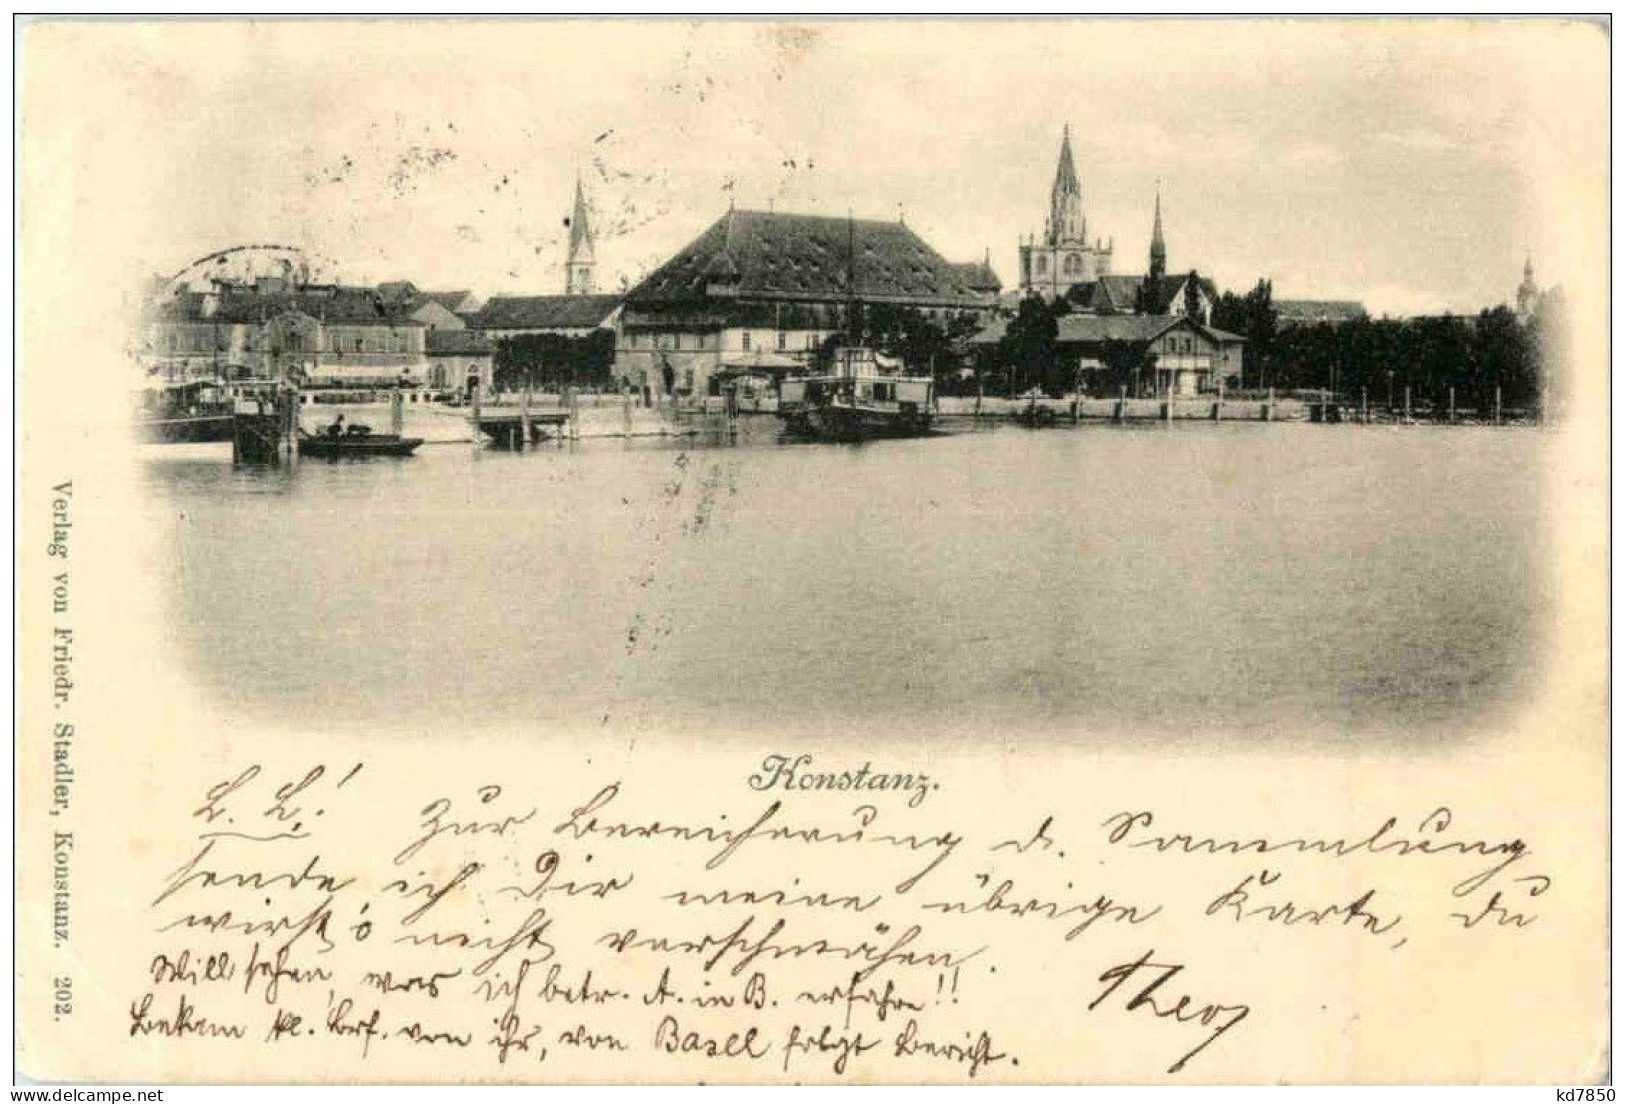 Konstanz - Konstanz